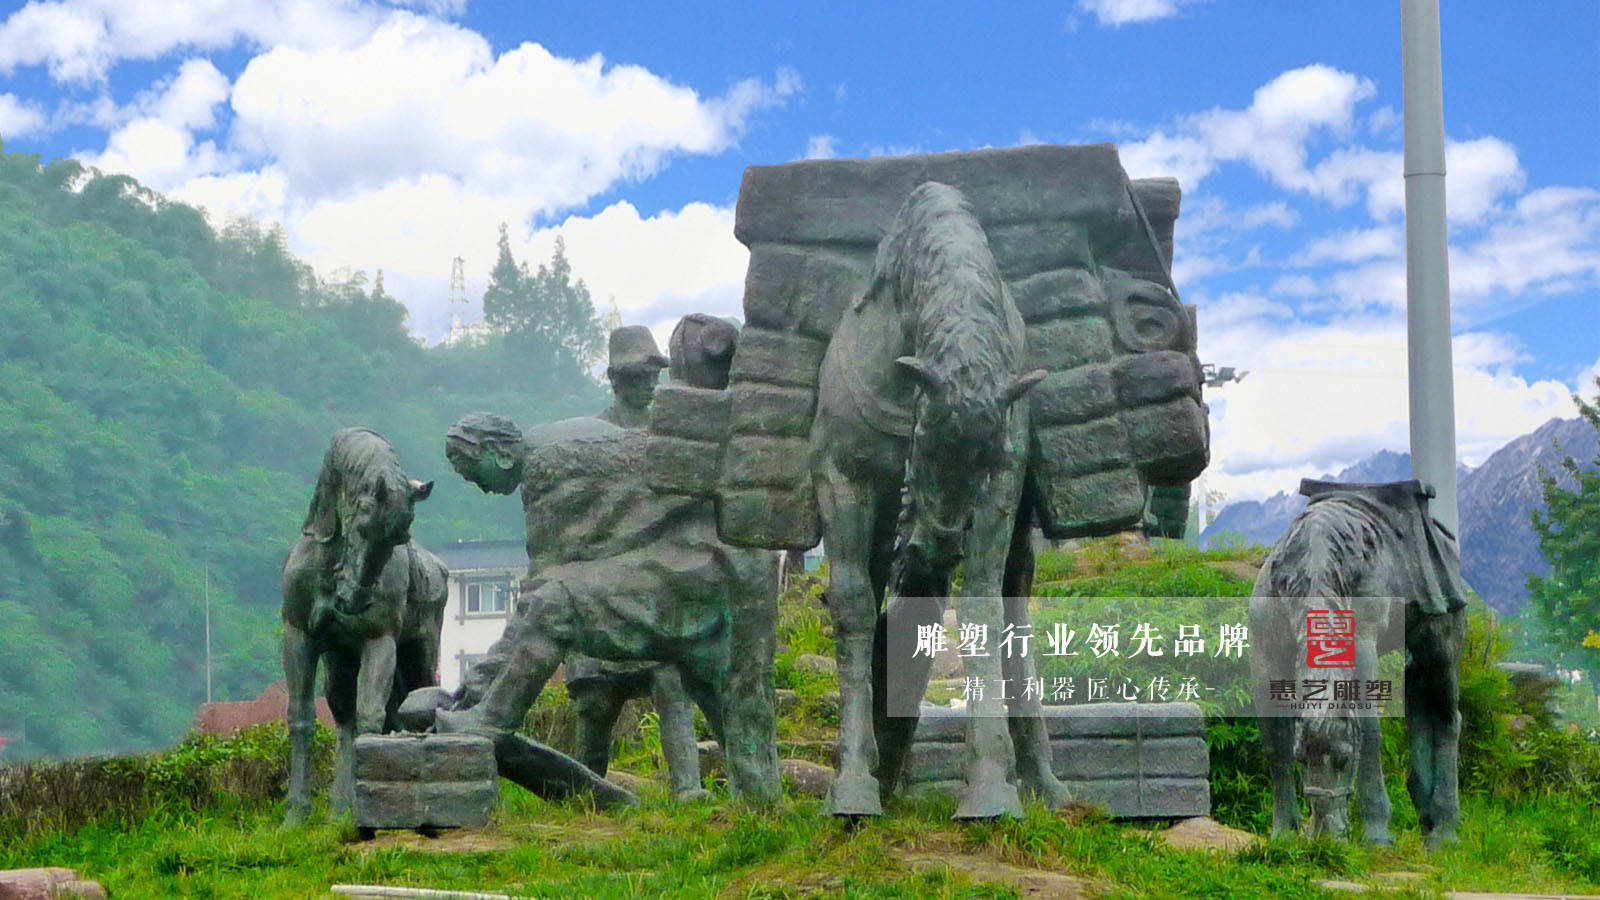 茶马古道雕塑——承载了千年的茶文化,带着马帮精神,让人品读岁月的陈